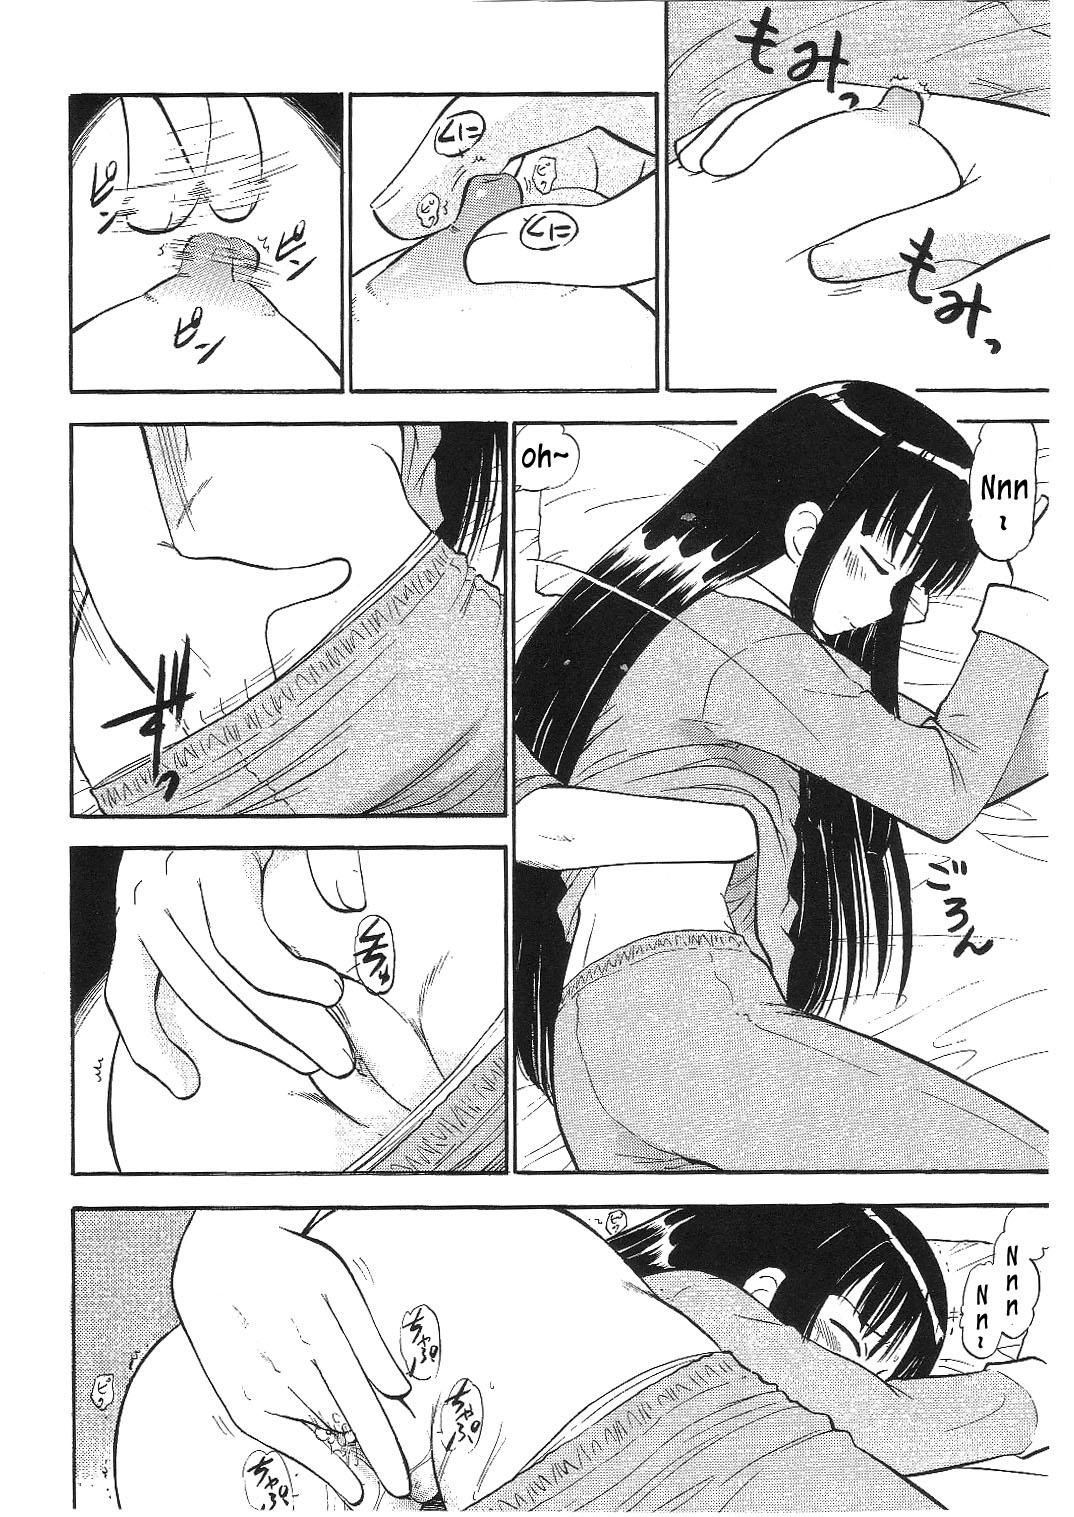 Stripper Konoka no Koisuru Heart | Konoka's Loving Heart - Mahou sensei negima Internal - Page 5